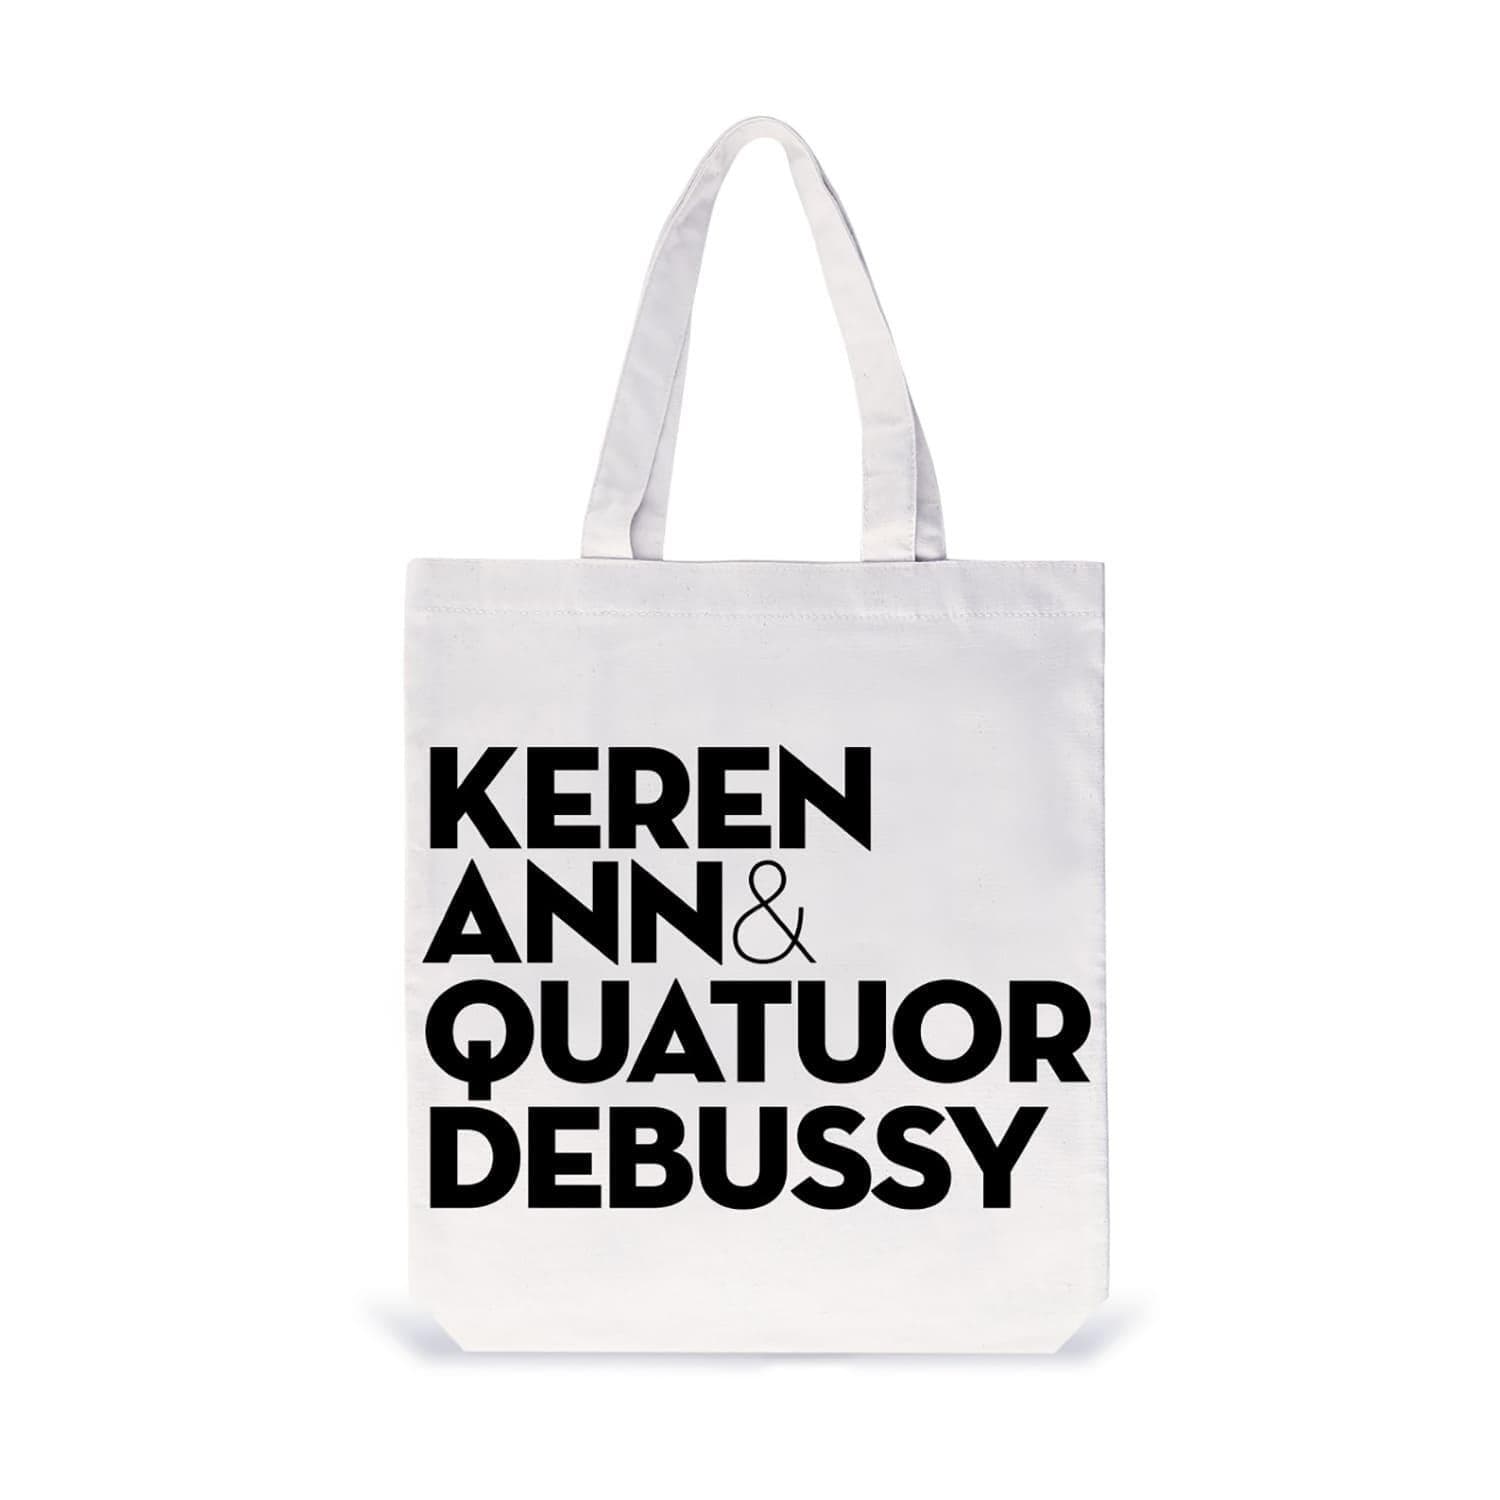 Keren Ann & Quatuor Debussy